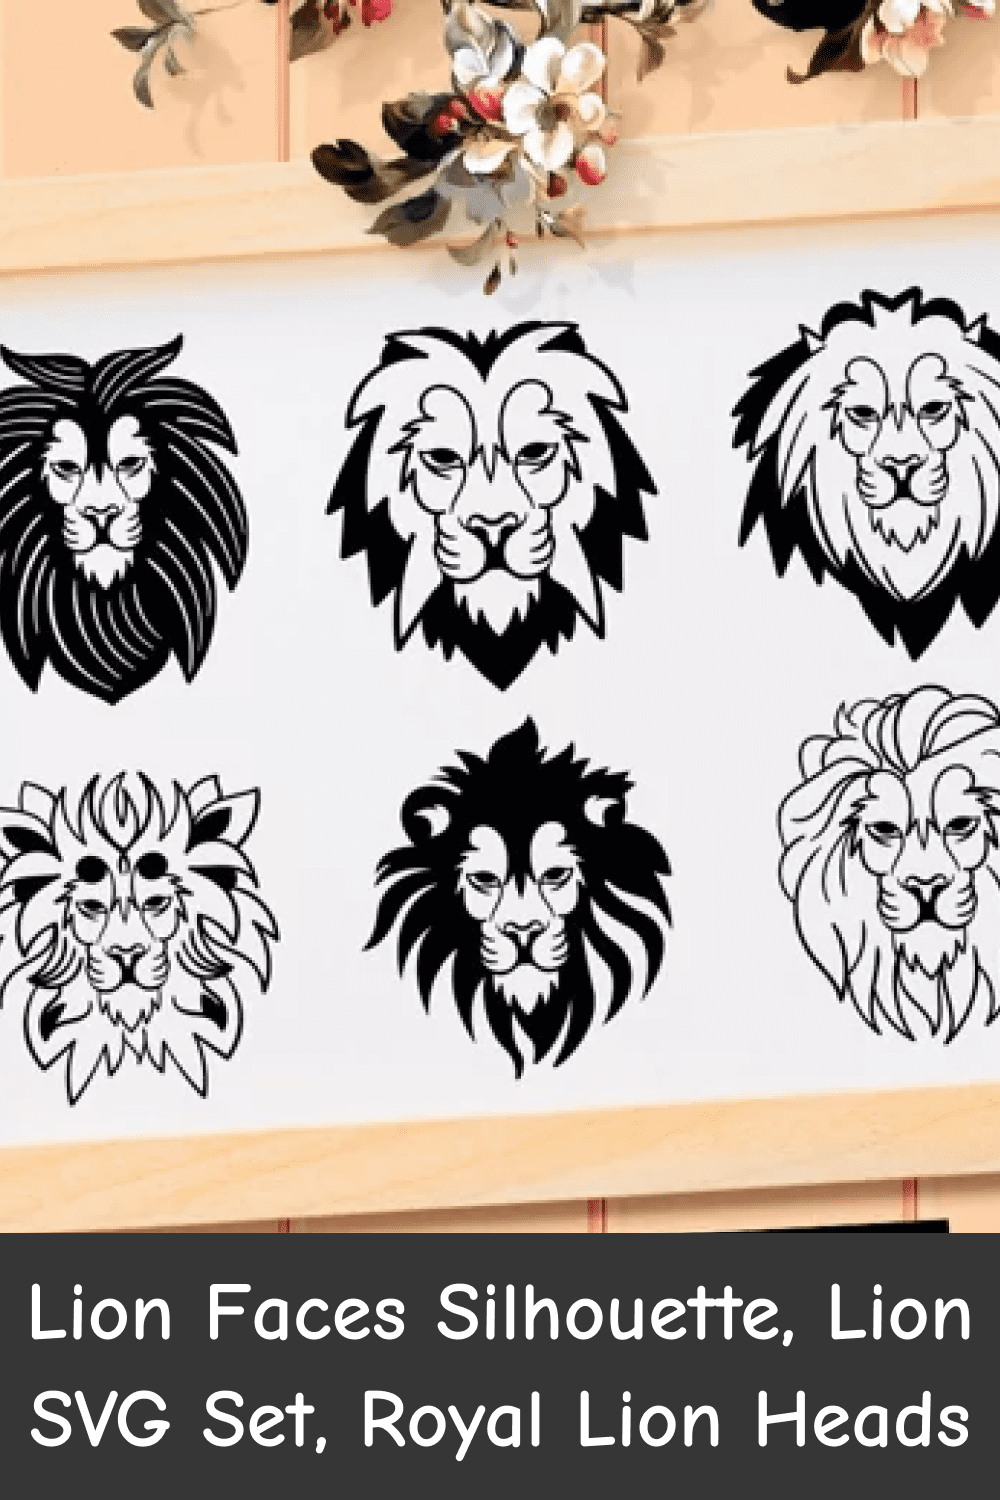 Lion Faces Silhouette, Lion SVG Set, Royal Lion Heads.